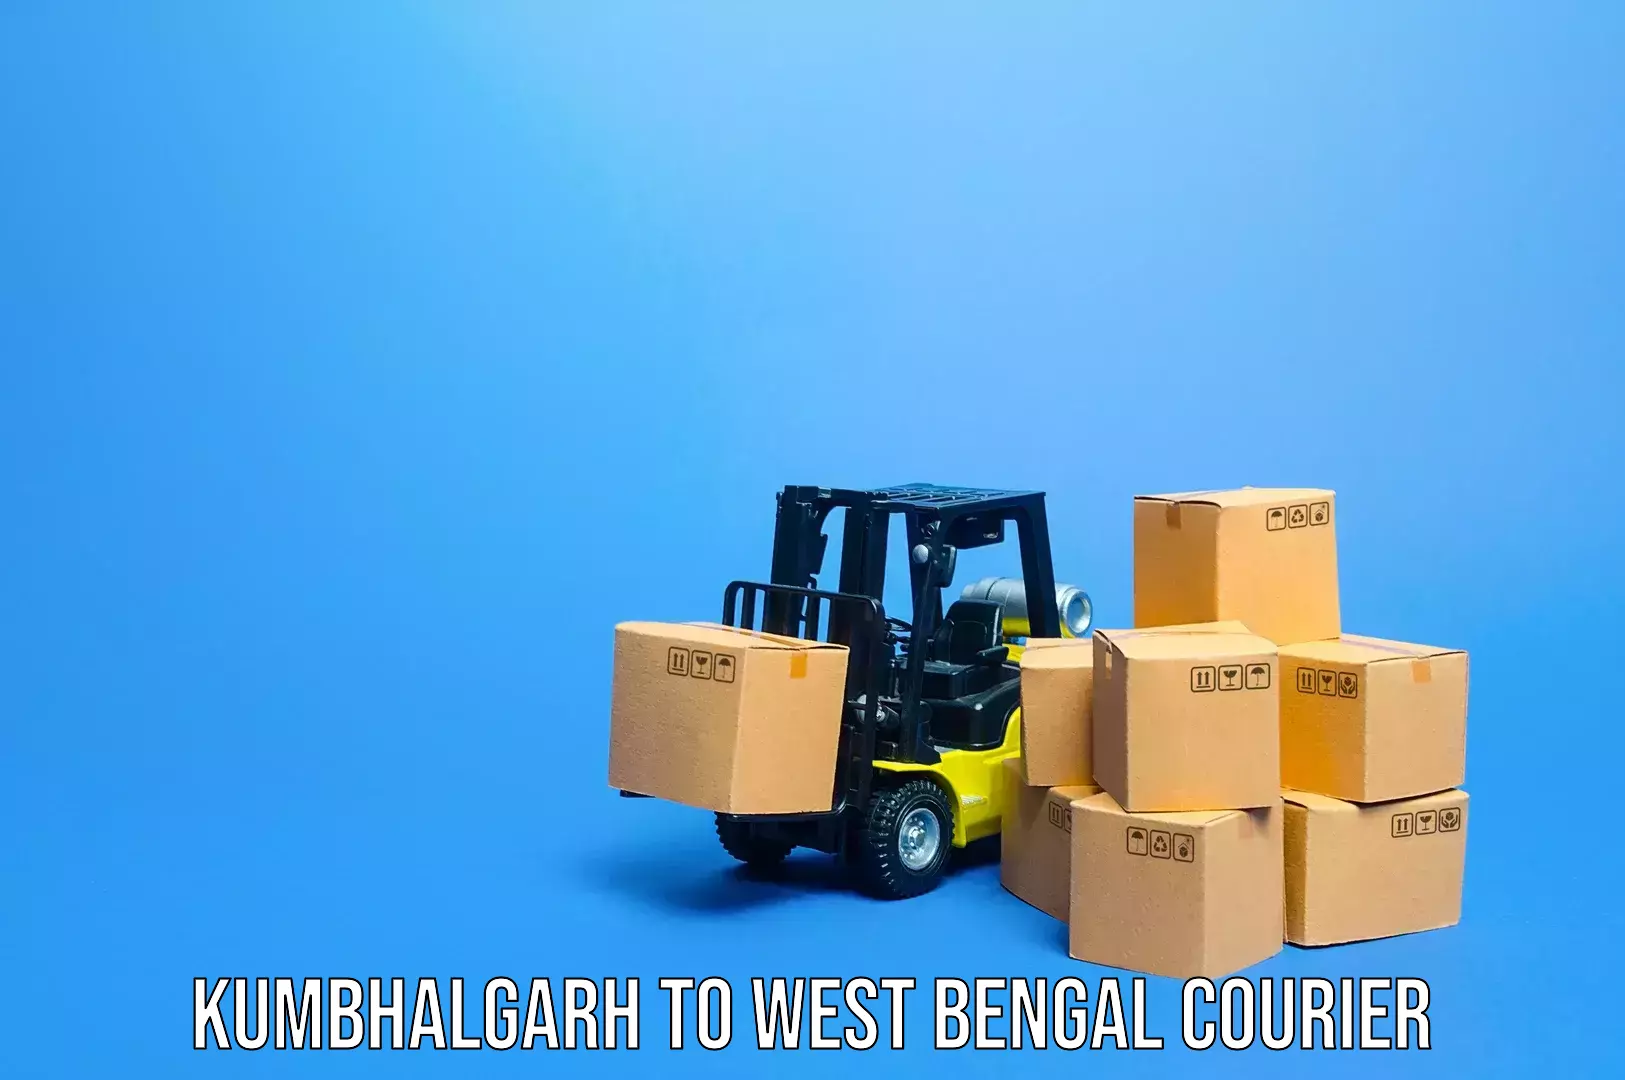 Baggage transport technology Kumbhalgarh to Panjipara